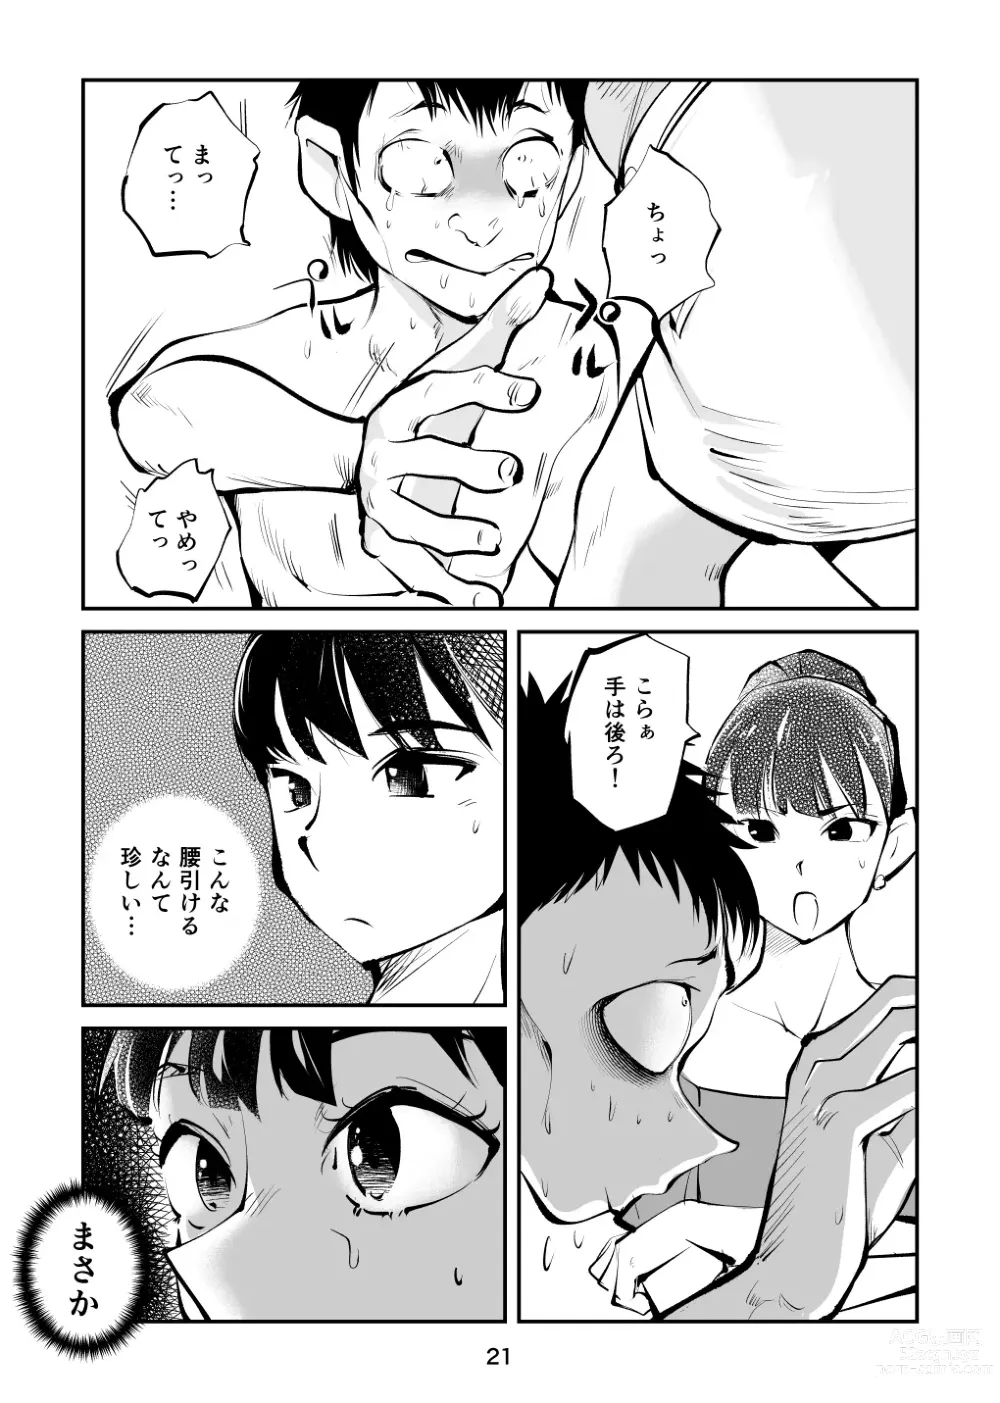 Page 21 of doujinshi Kintama o tsubushita joshi-ana